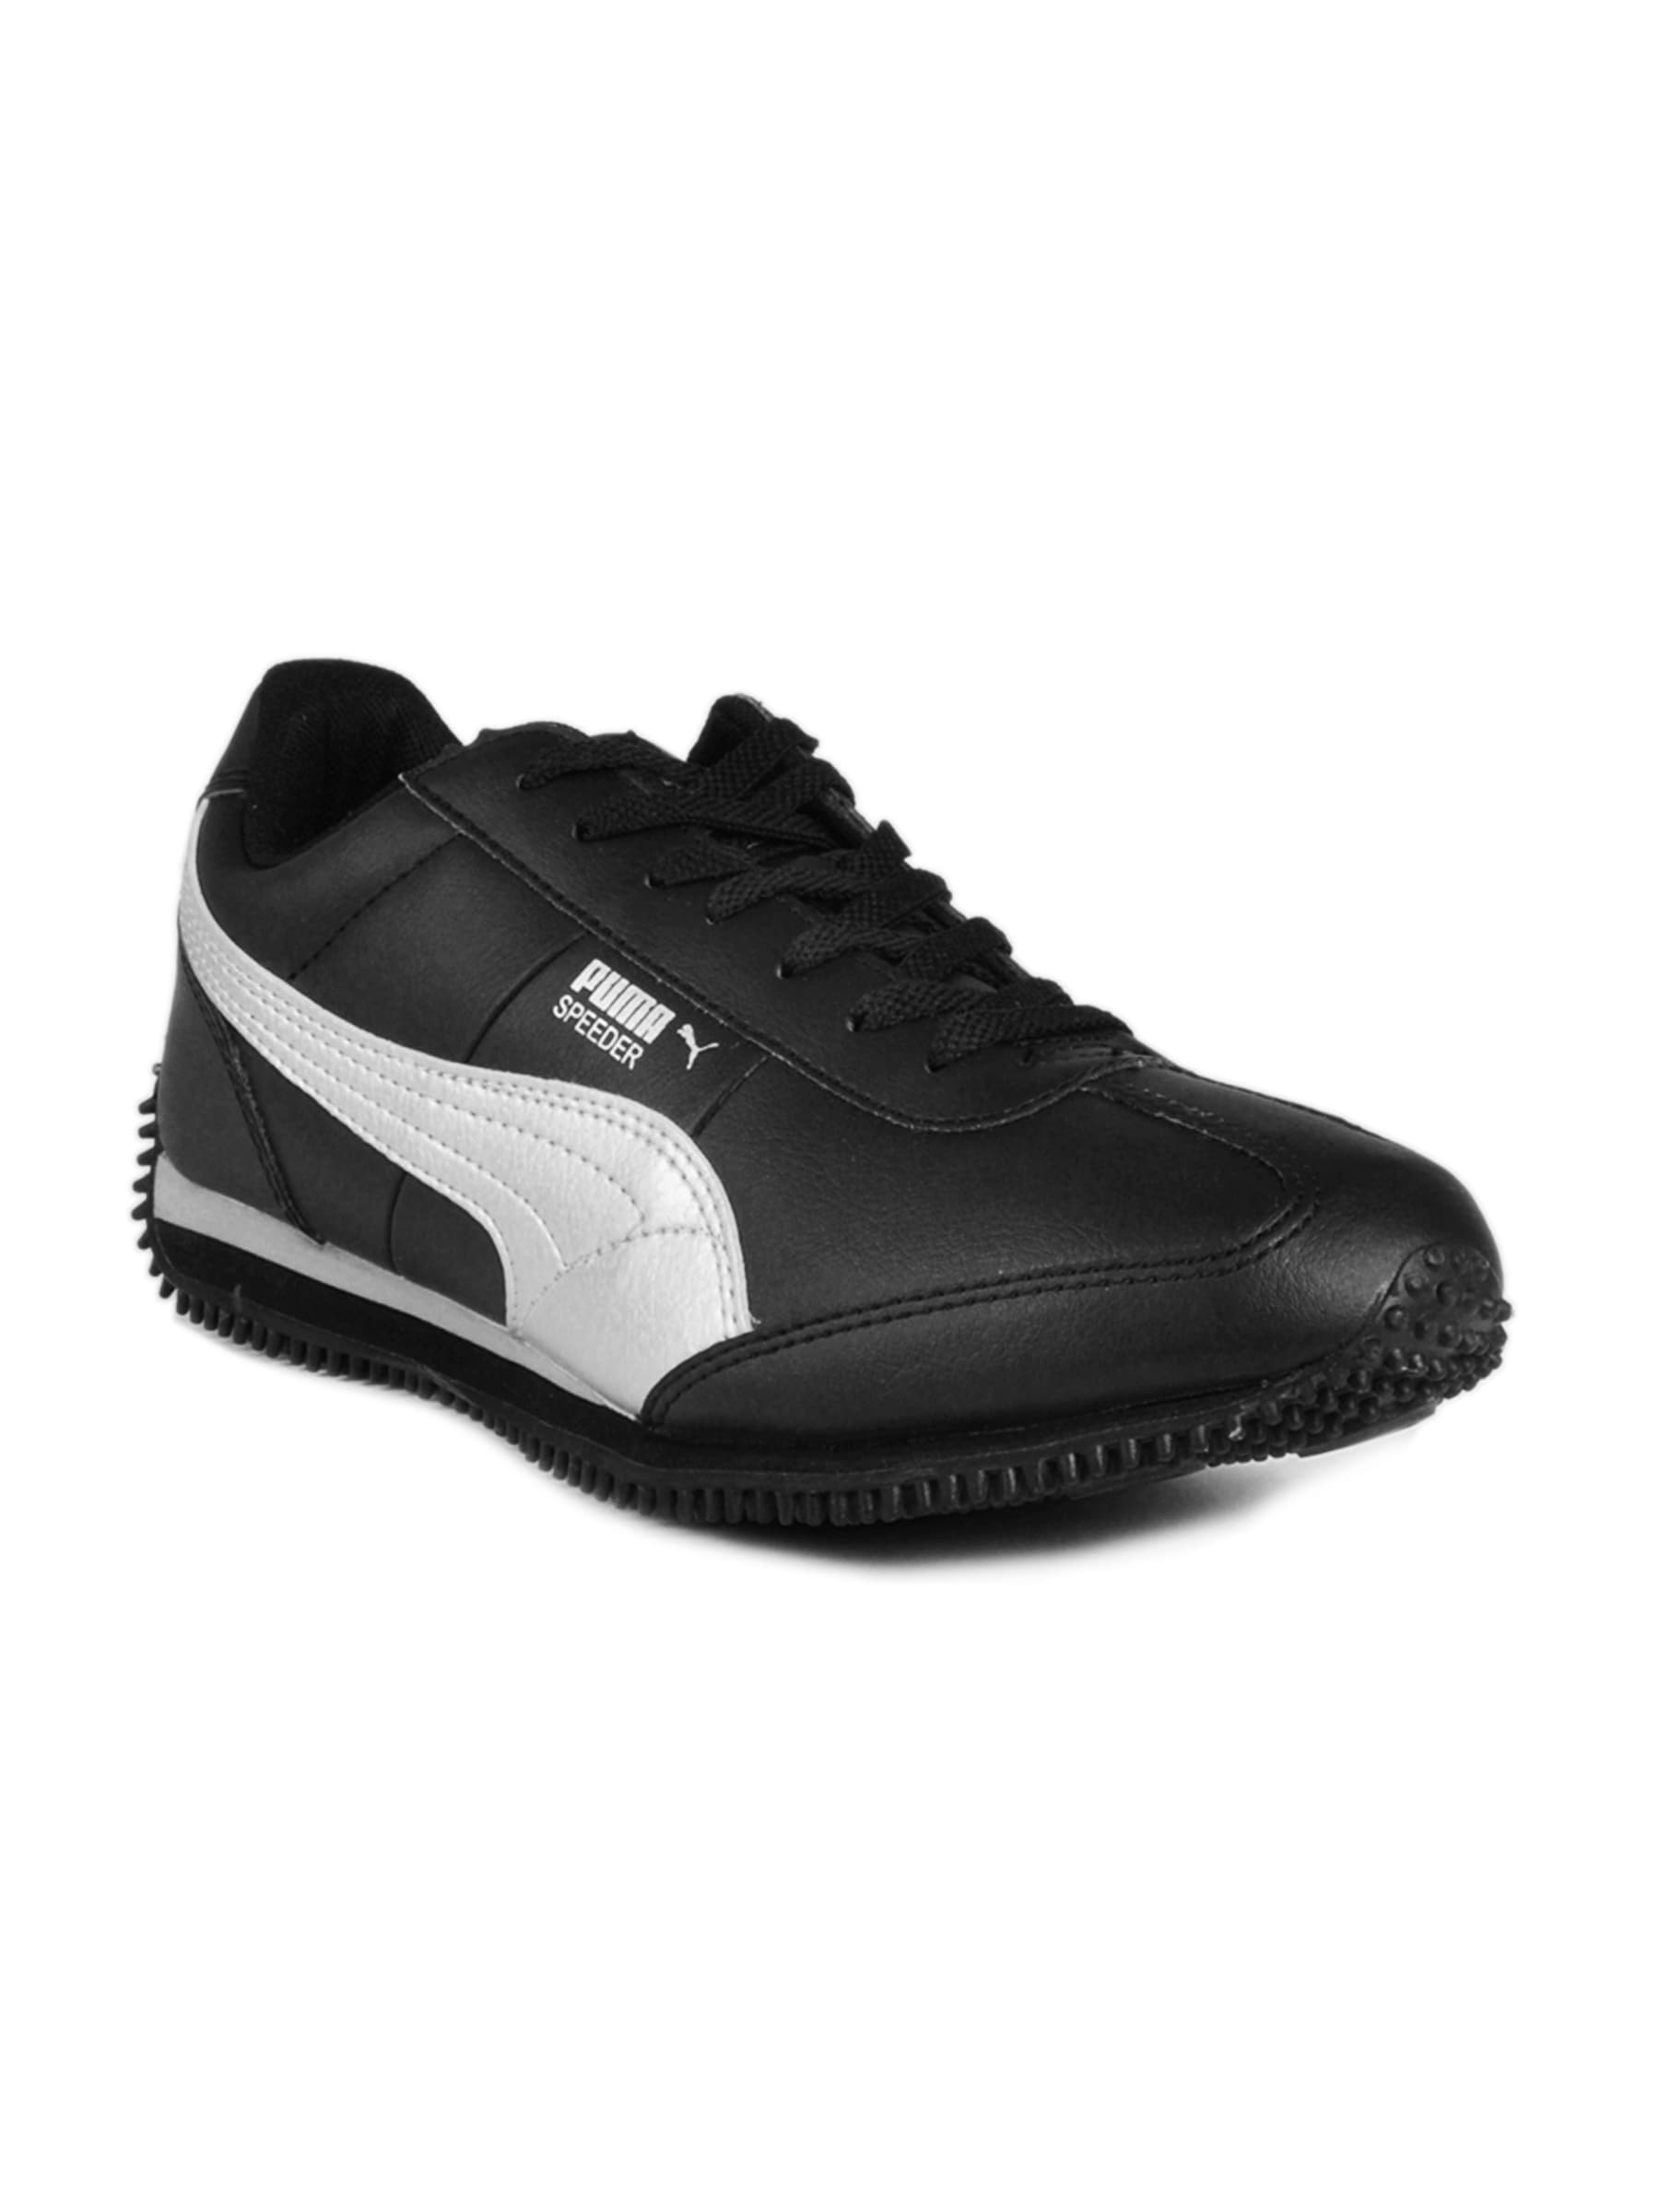 Puma Men Speeder Black Casual Shoes